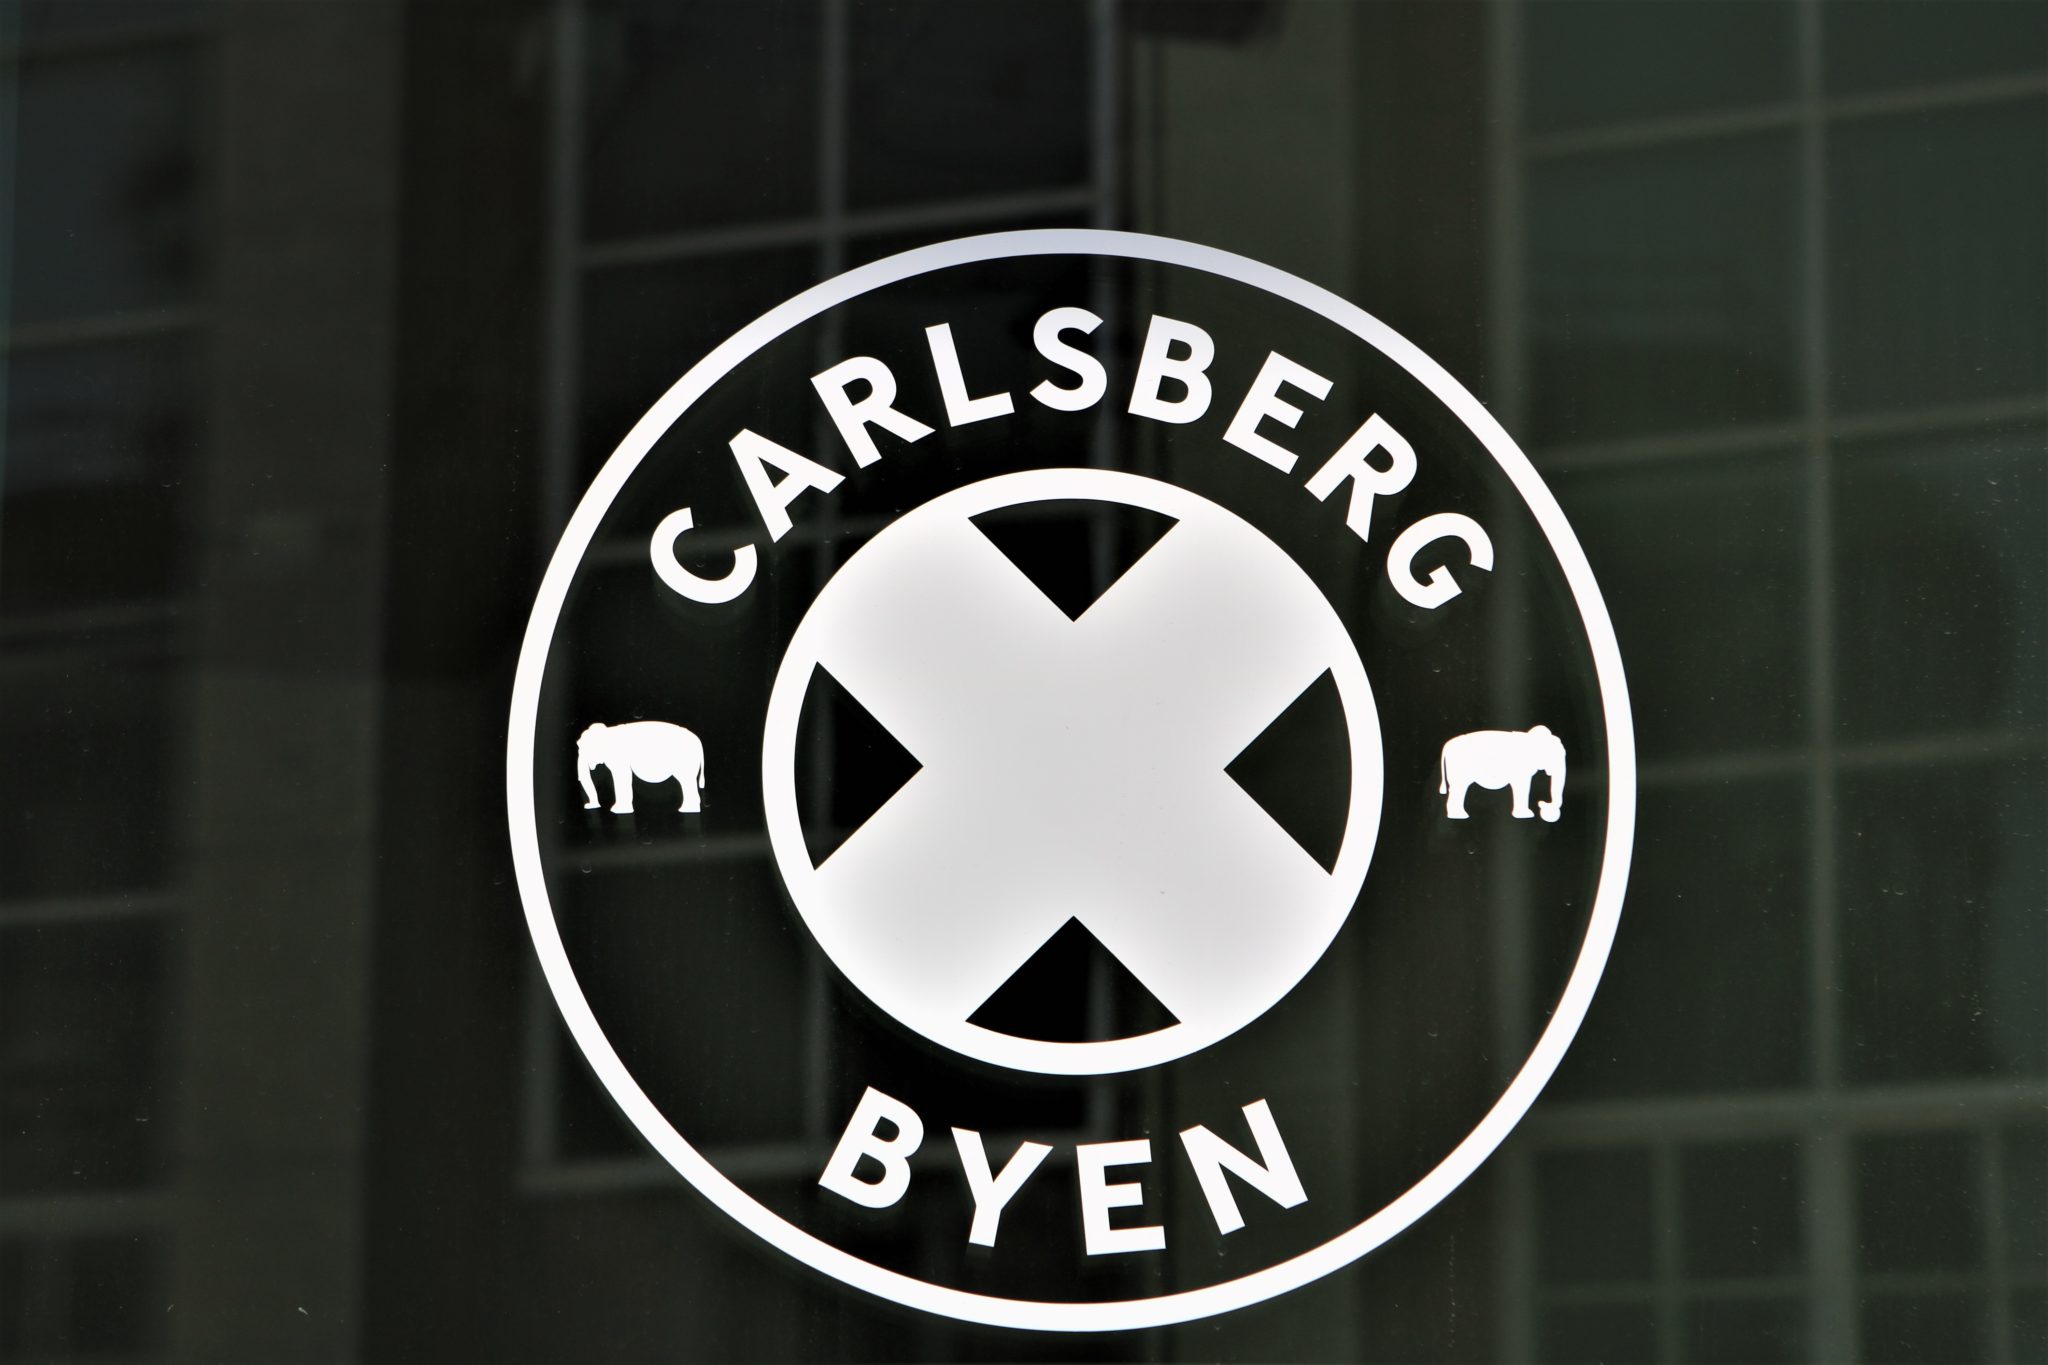 Se madanmeldernes favoritter i Carlsberg Byen